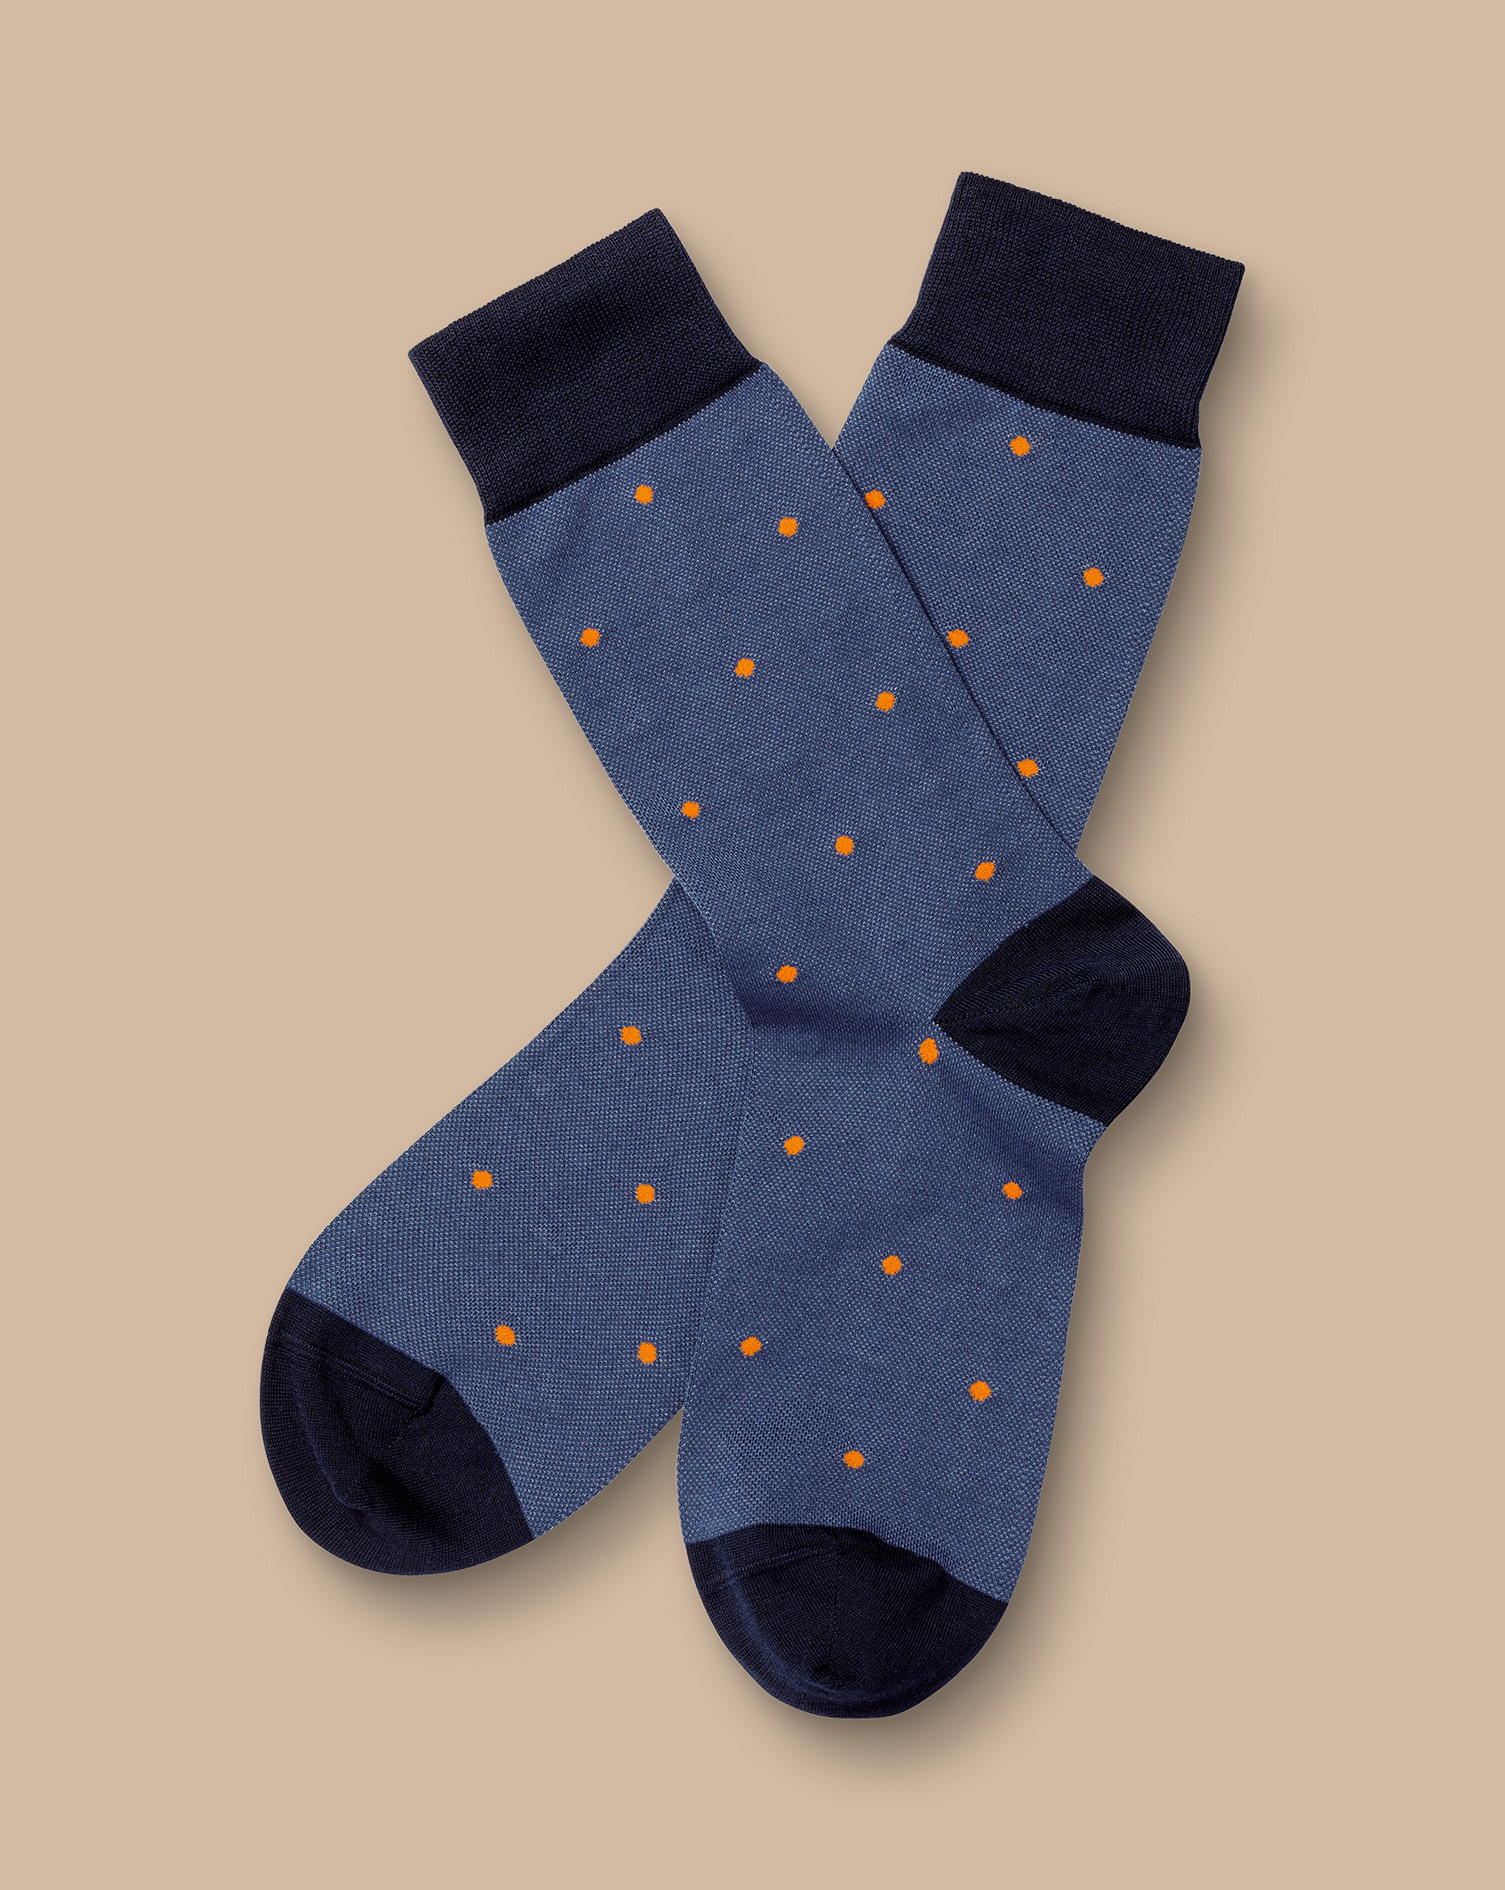 Men's Charles Tyrwhitt Spot Socks - Ocean Blue Size 10.5-13 Cotton
